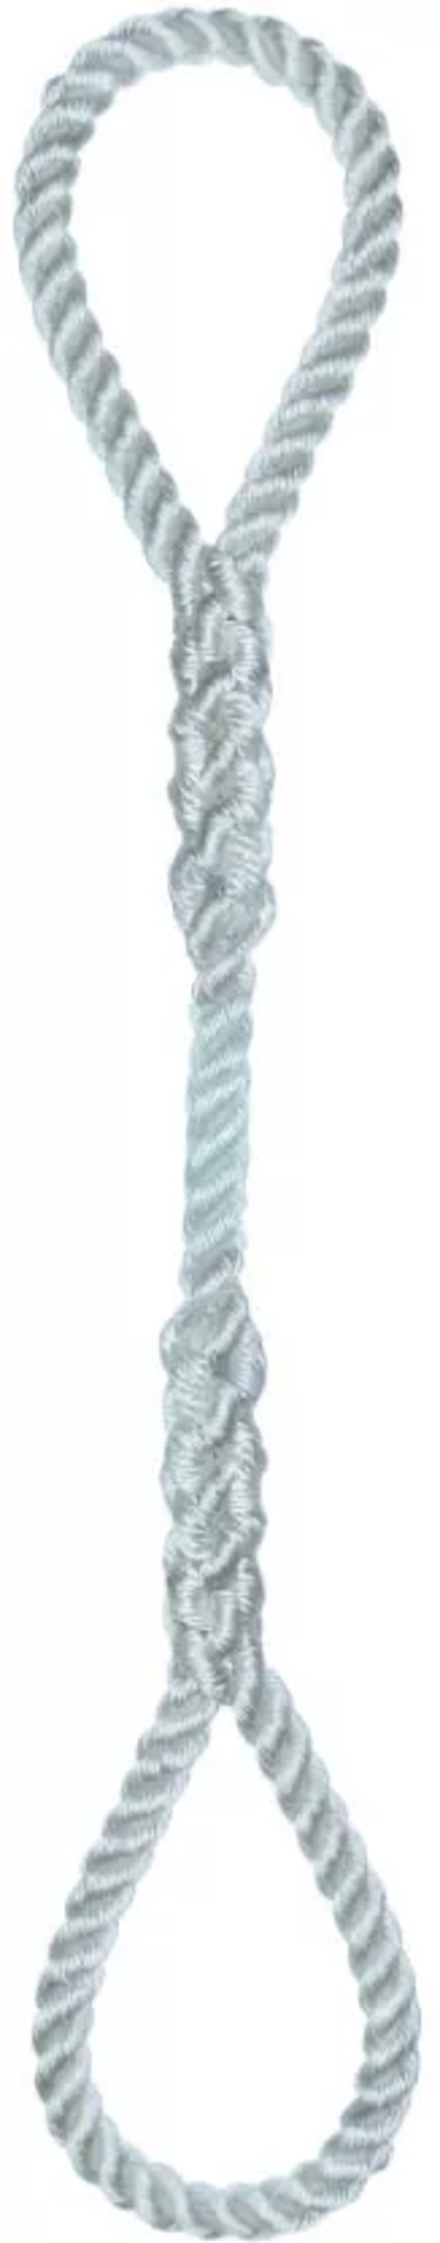 Élingue corde d.20 mm cmu 512 kg 2 grandes boucles long 1 m LEVAC - 4404K